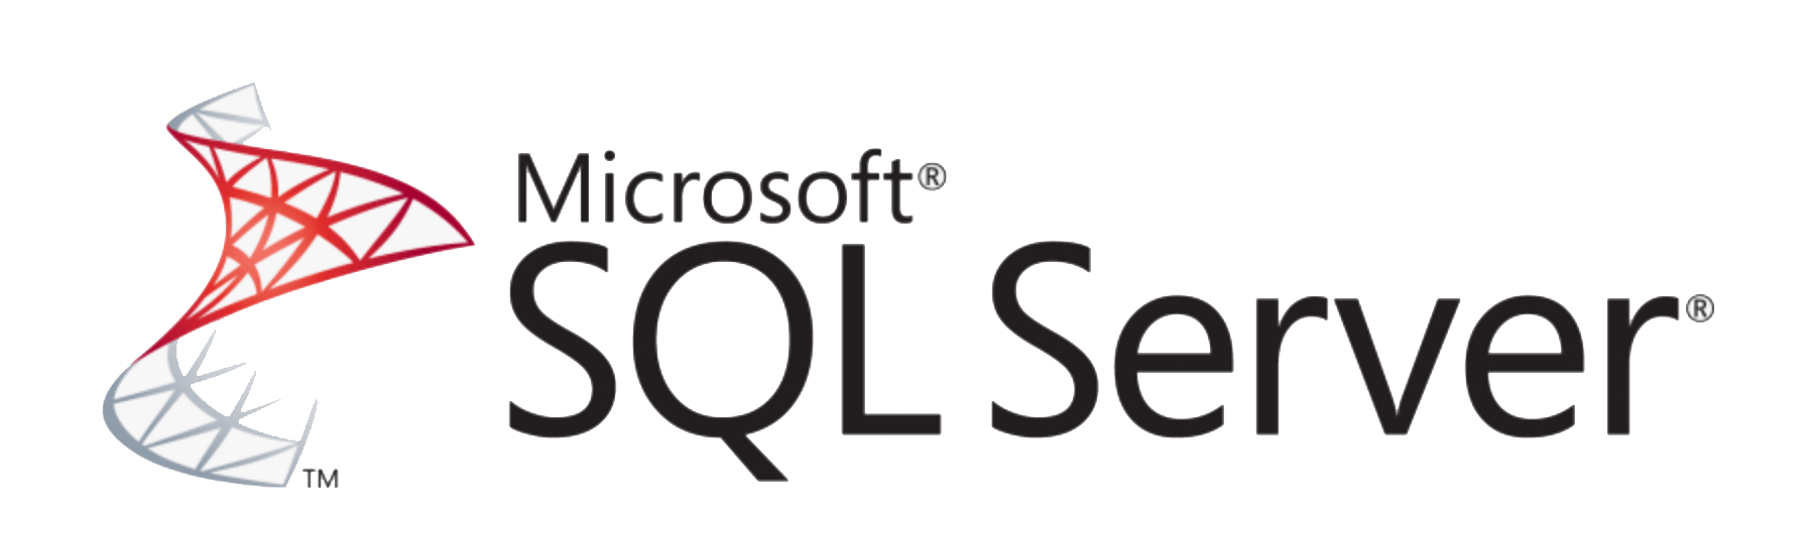 Microsoft SQL Server Pricing